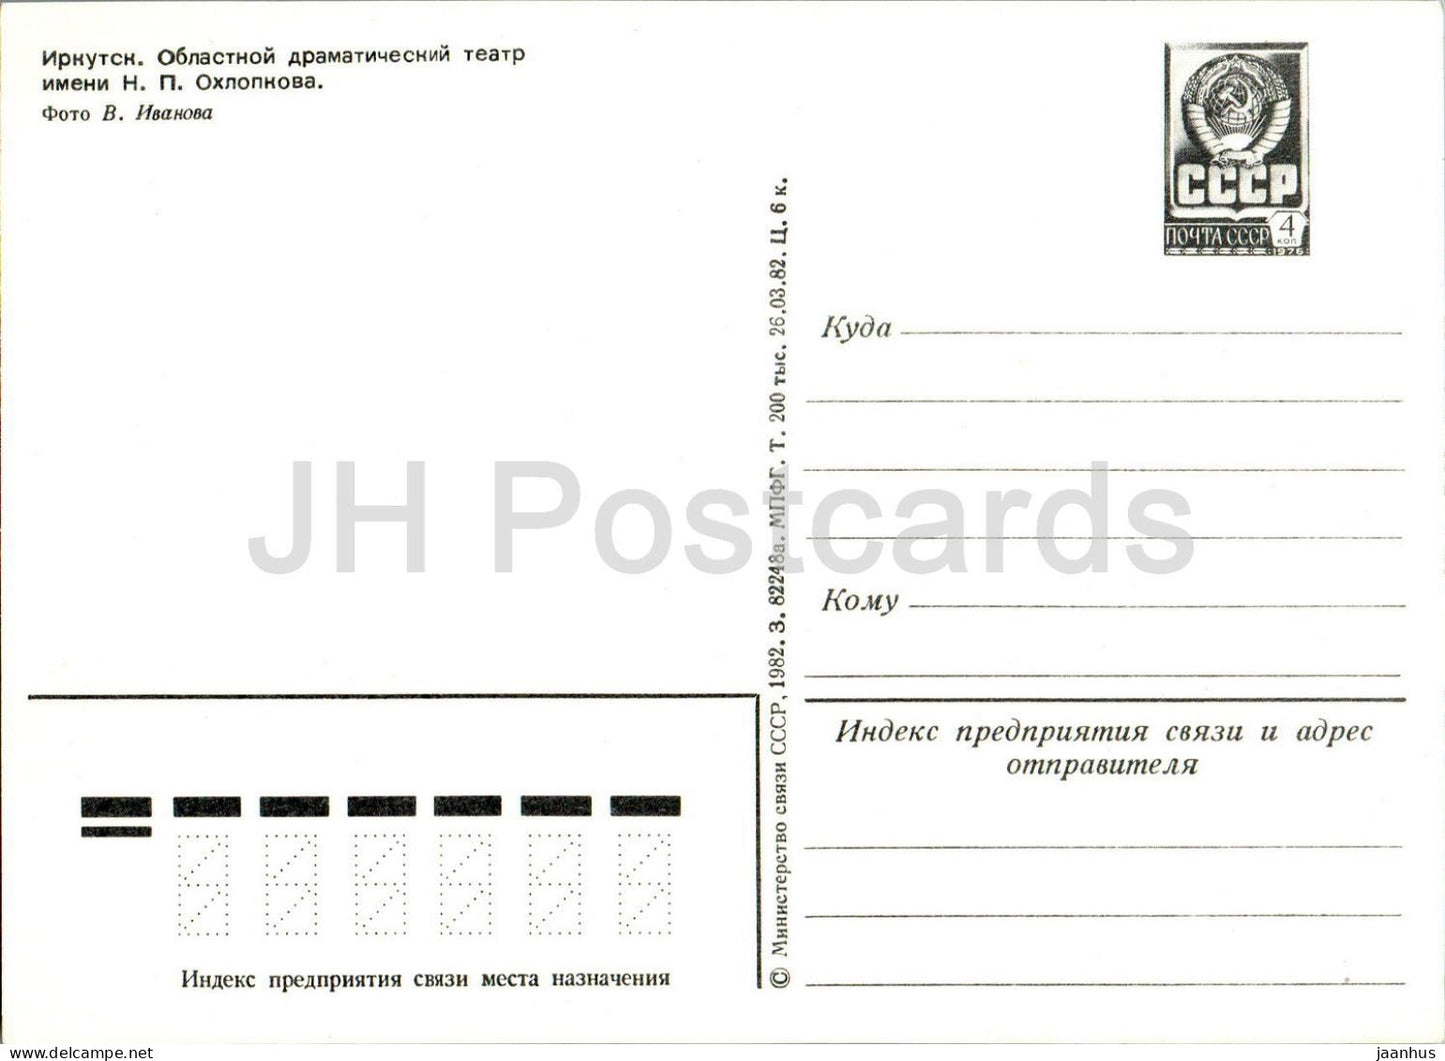 Irkoutsk - Théâtre dramatique régional - bus LAZ - entier postal - 1982 - Russie URSS - inutilisé 